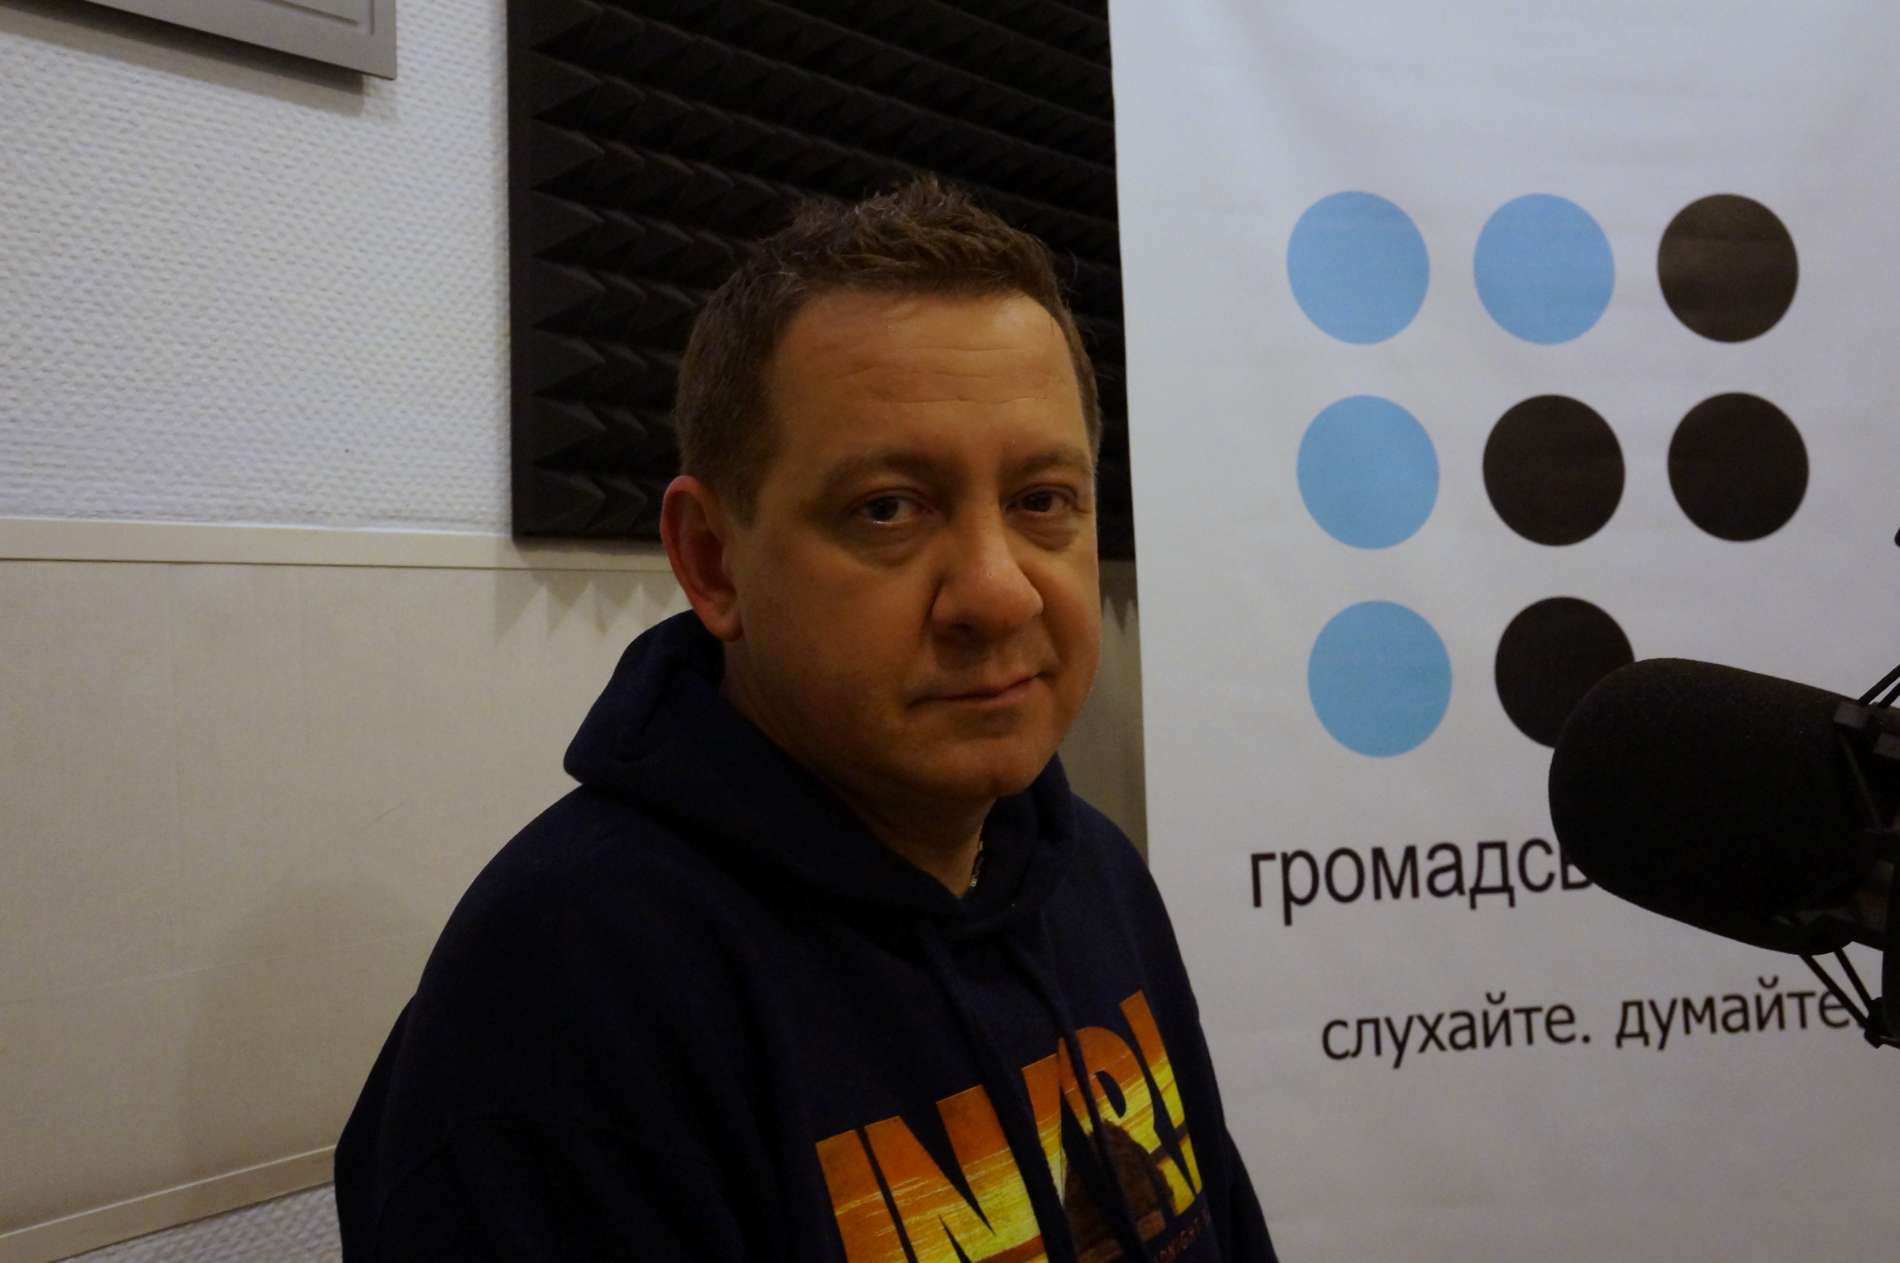 В Крыму создано «гетто», где каждый может стать жертвой репрессий, — Айдер Муждабаев